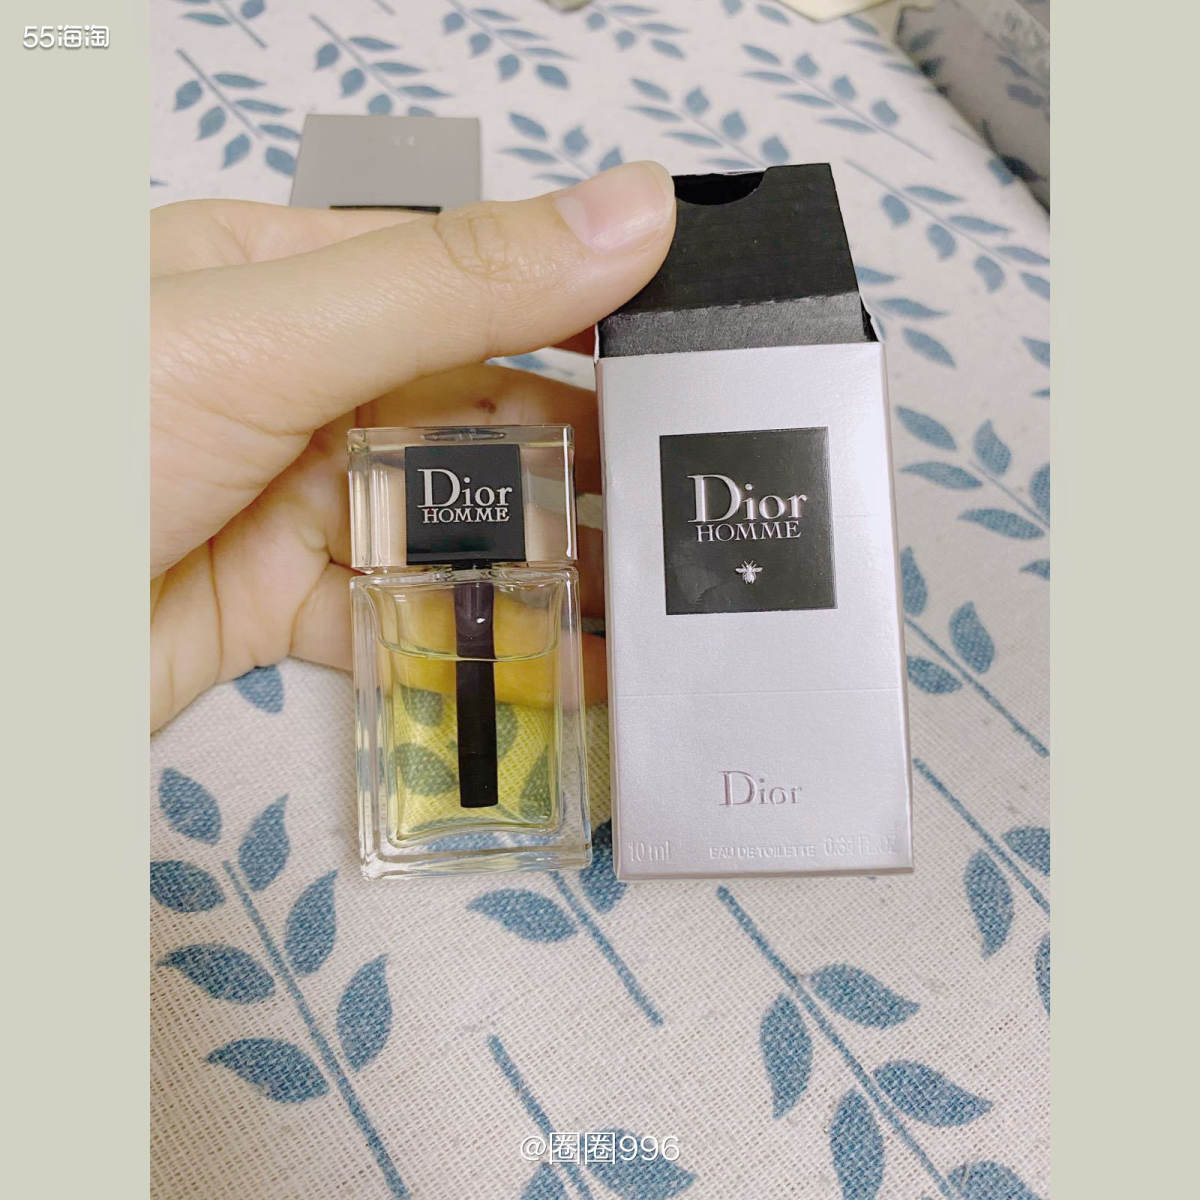 丝芙兰积分兑换好物---dior香水 🥰喜欢买美国丝芙兰的